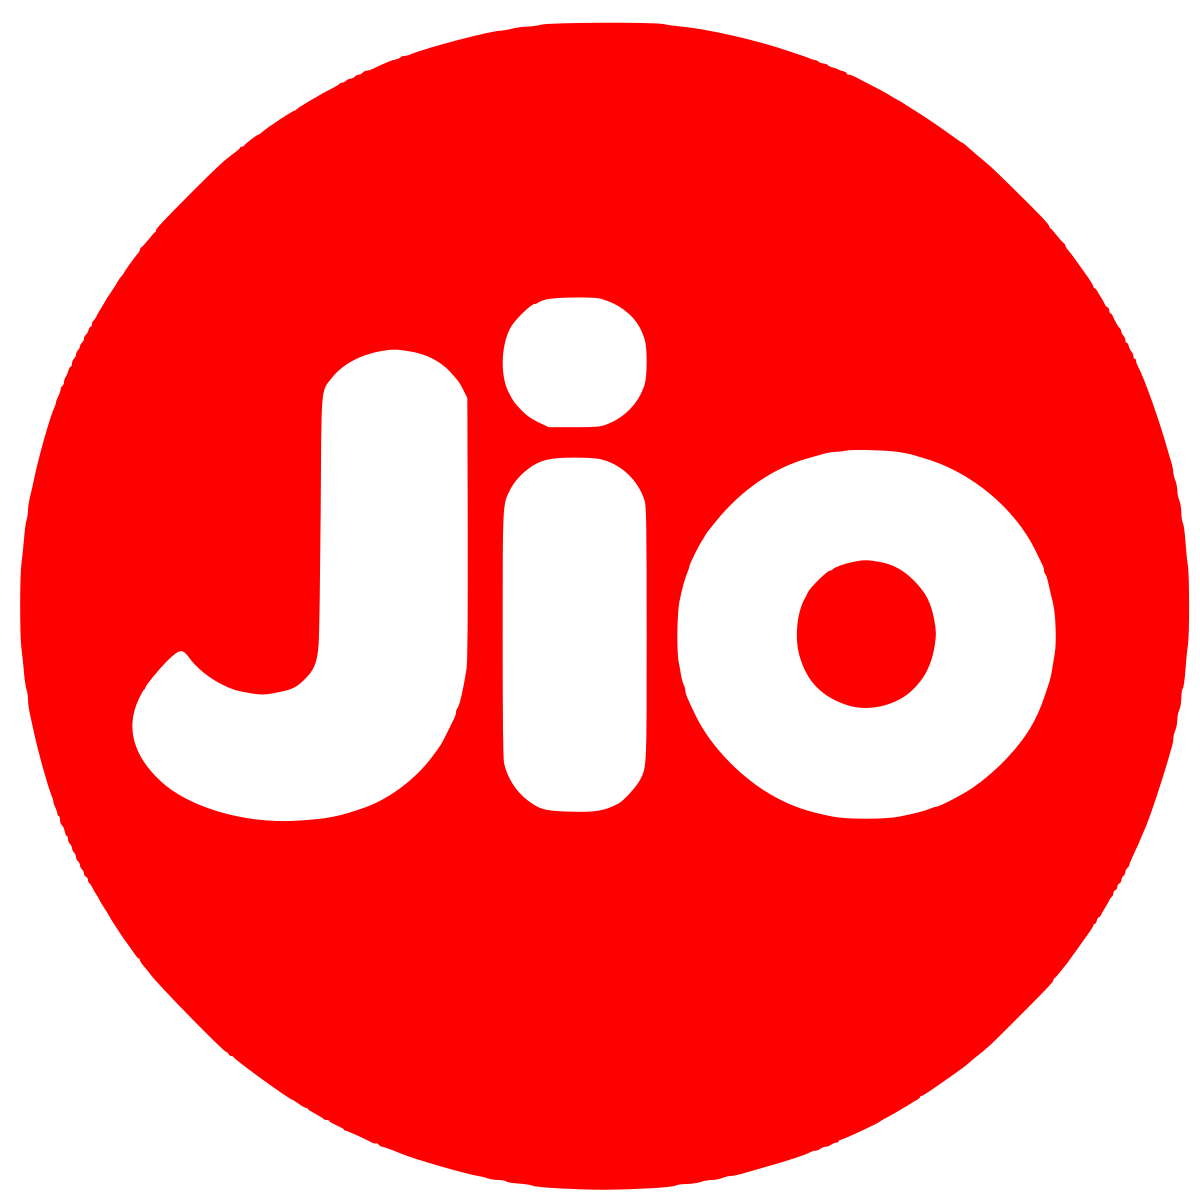 Jio Platforms